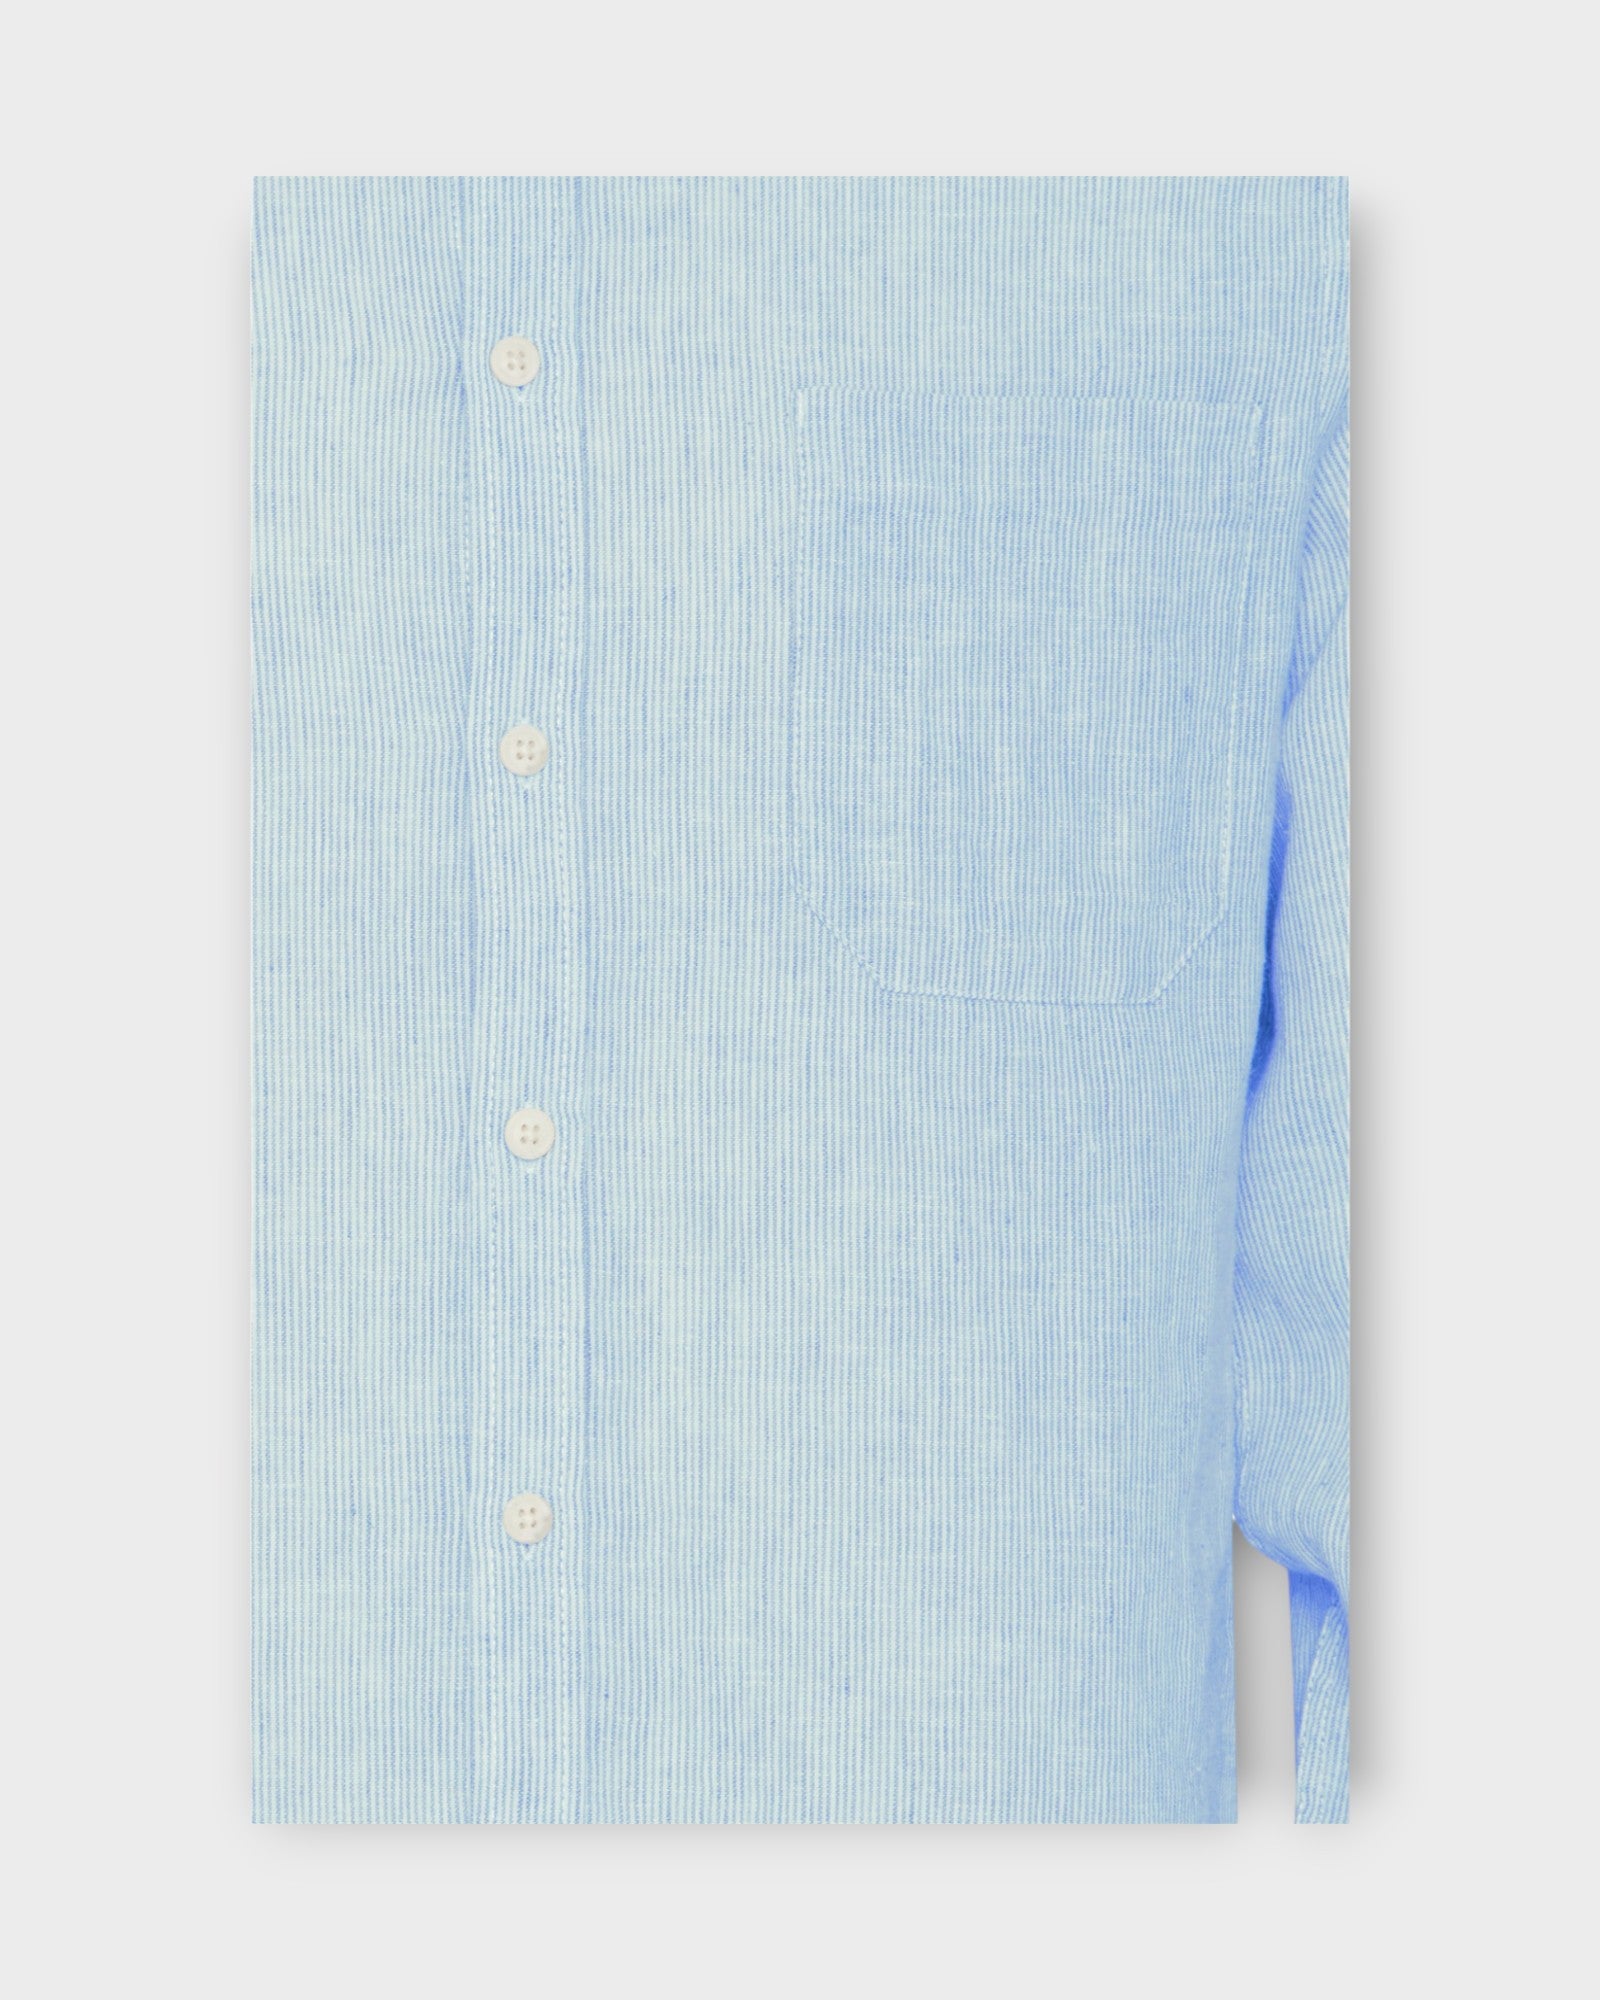 Anton Ls Striped Linen Mix Shirt  Chambray Blue, langærmet hørskjorte fra Casual Friday. Her ses closeup af kvaliteten.